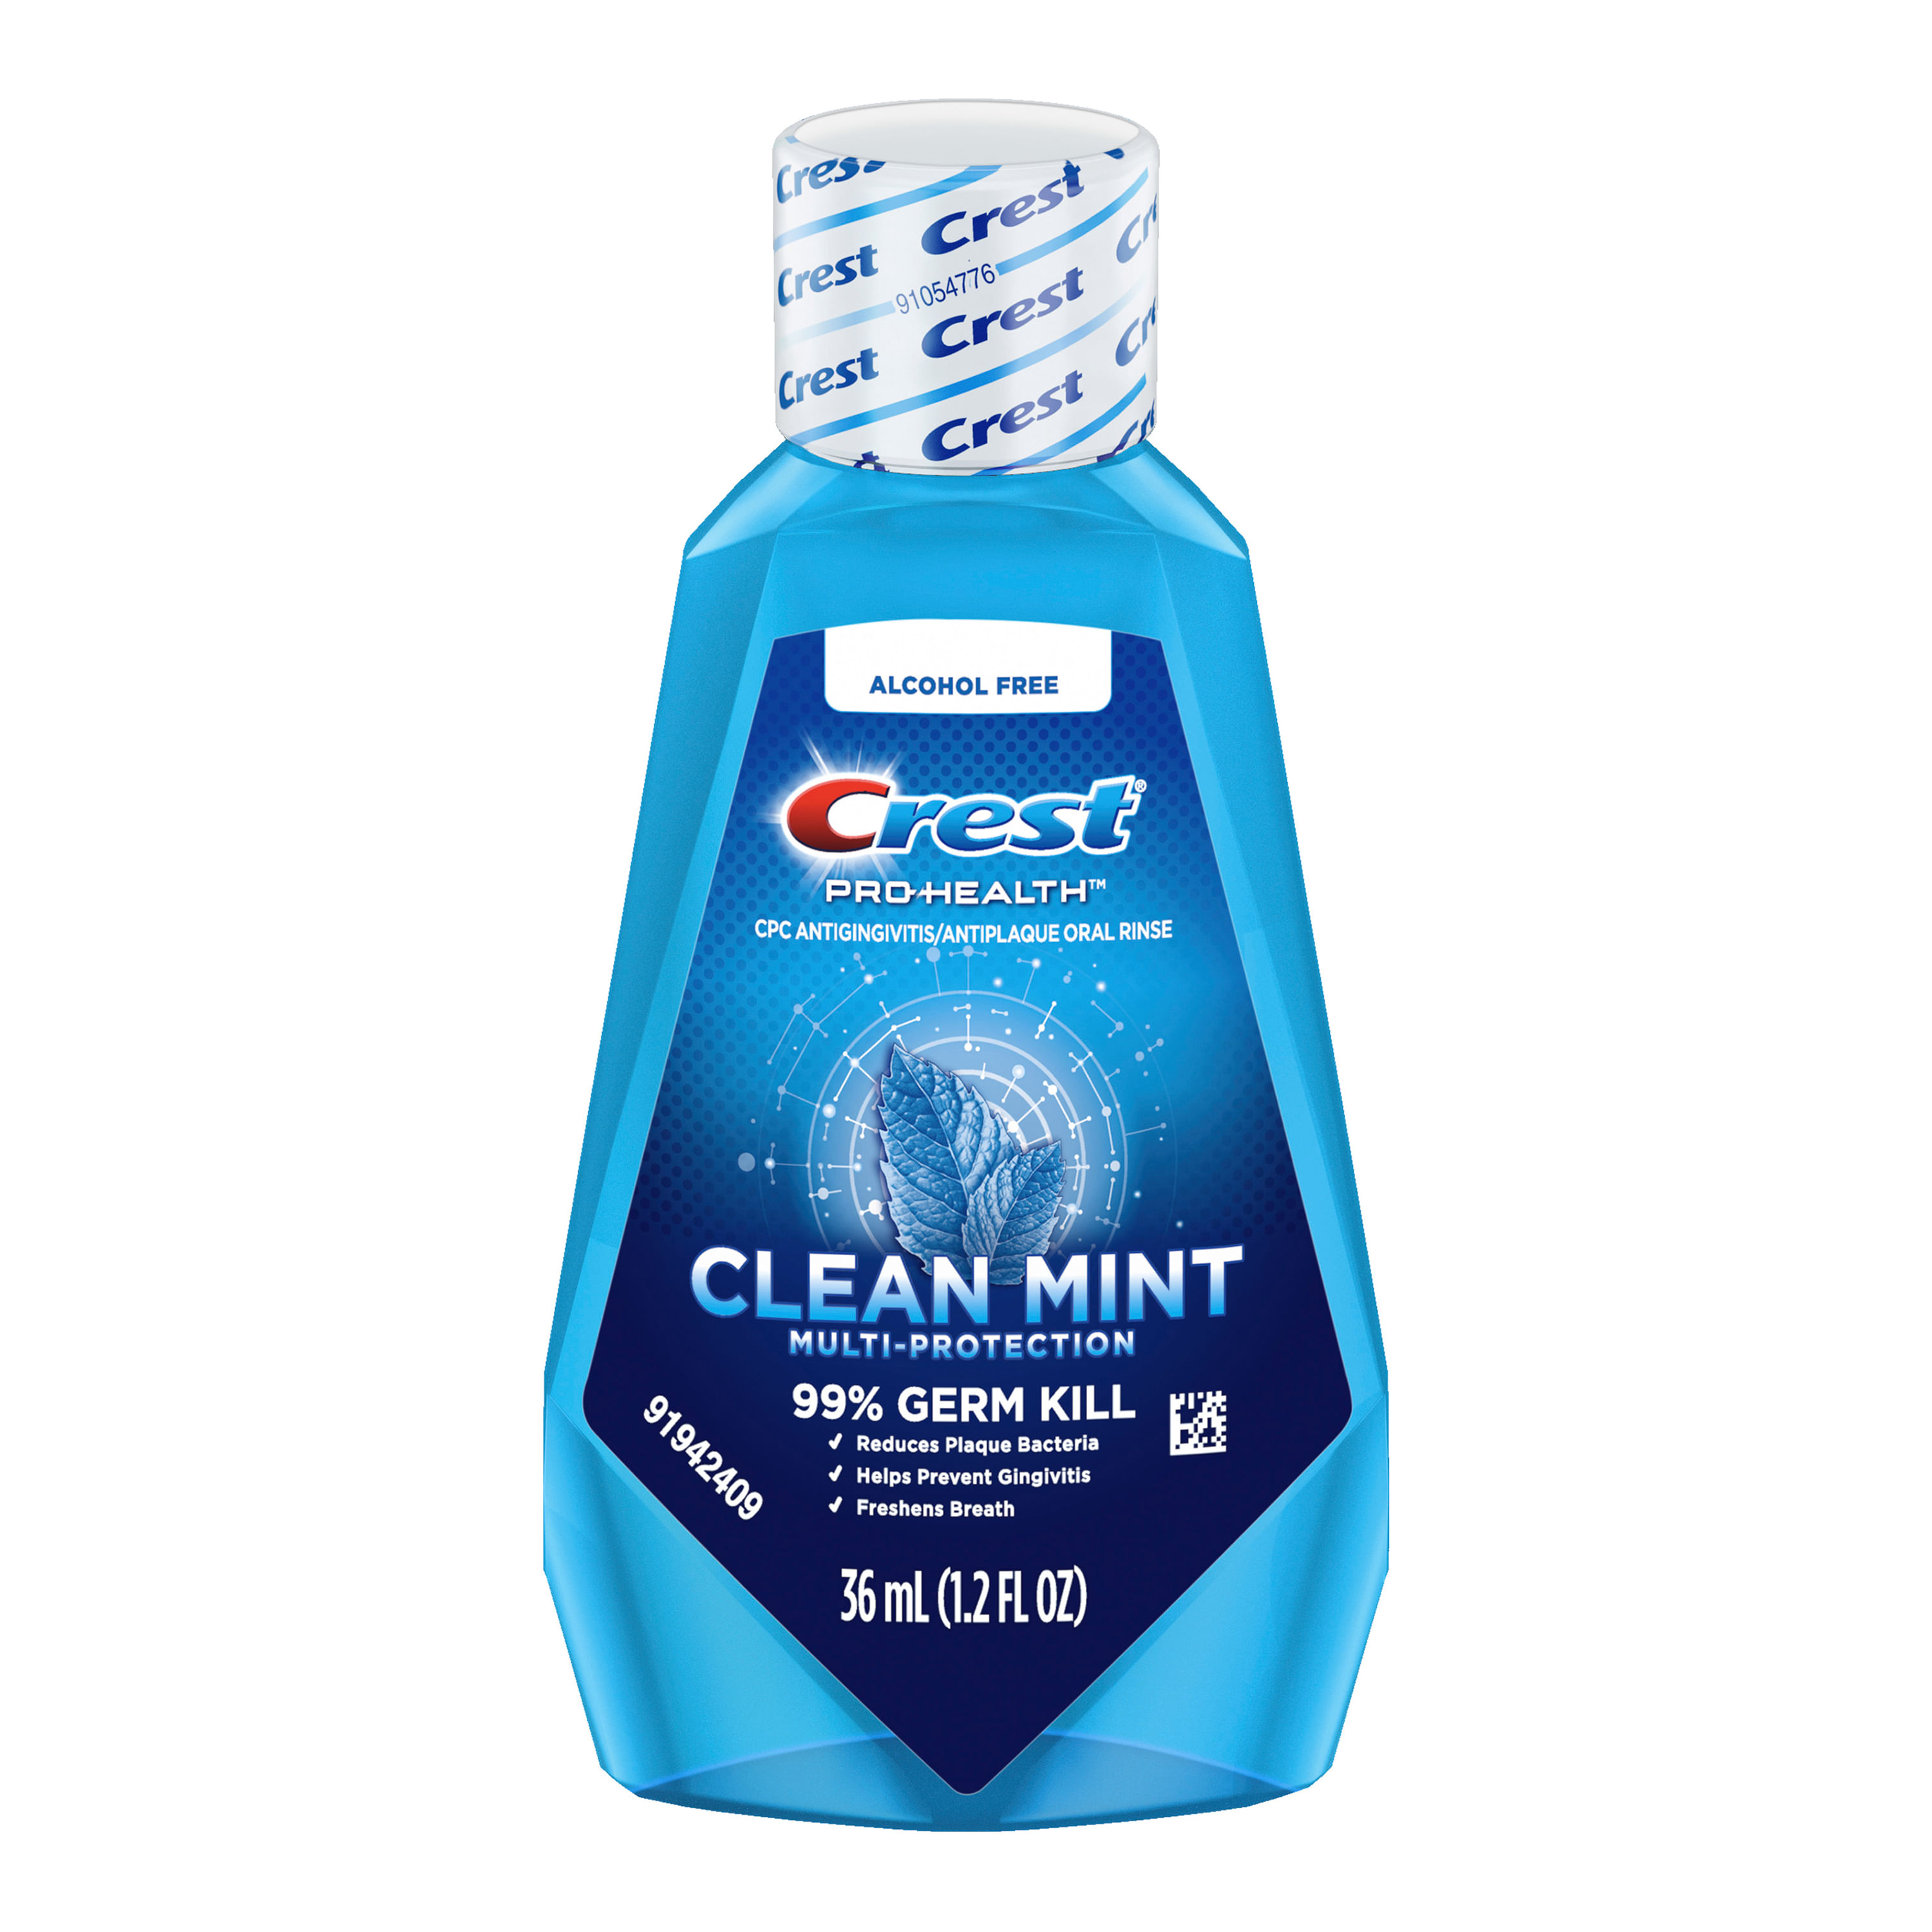 Enjuague-Crest-Prohealth-Clean-Mint-36ml-1-5018